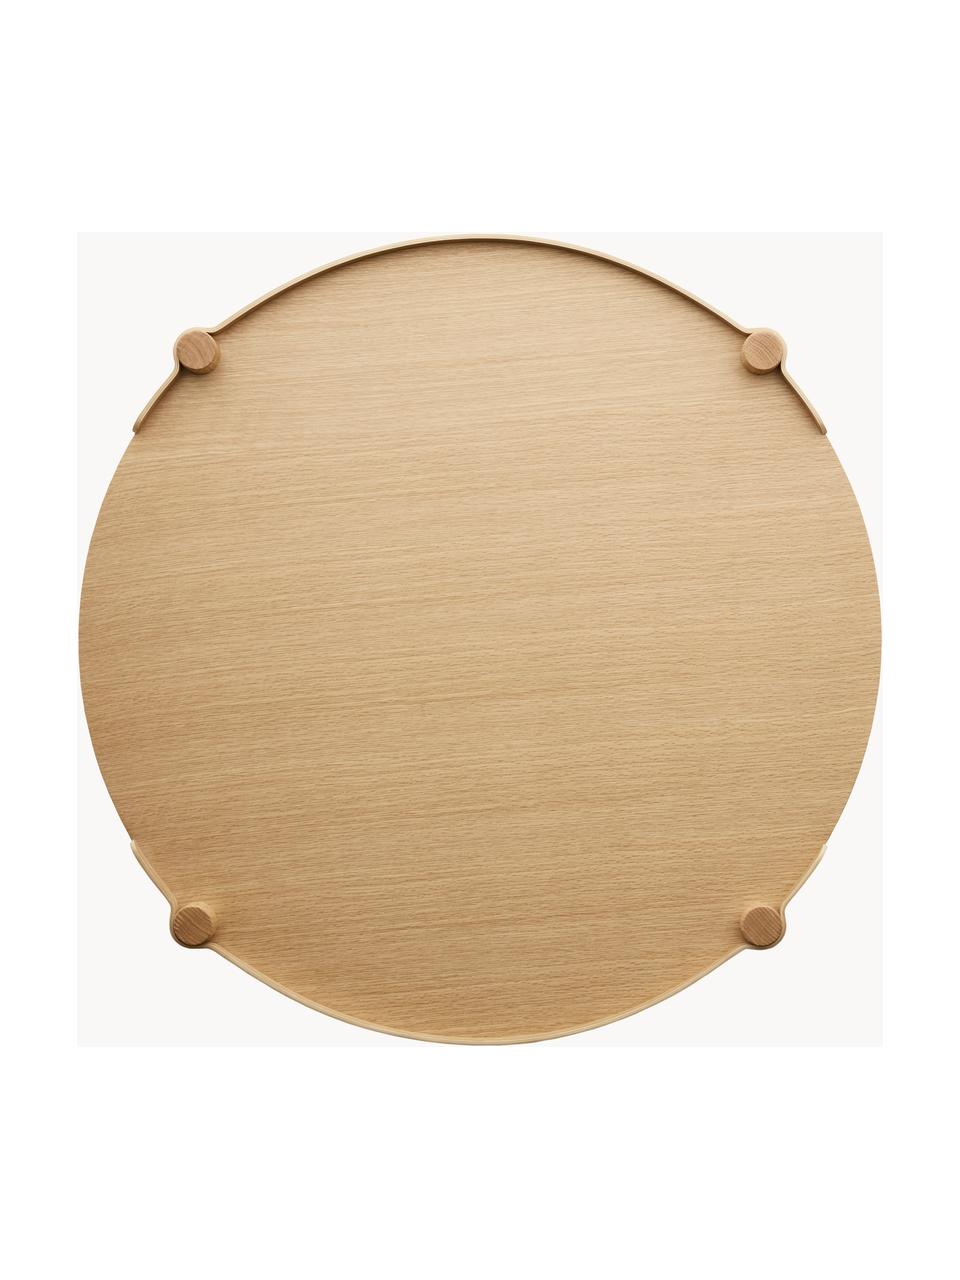 Kulatý konferenční stolek z dubového dřeva Woody, Dubové dřevo

Tento produkt je vyroben z udržitelných zdrojů dřeva s certifikací FSC®., Dubové dřevo, Ø 80 cm